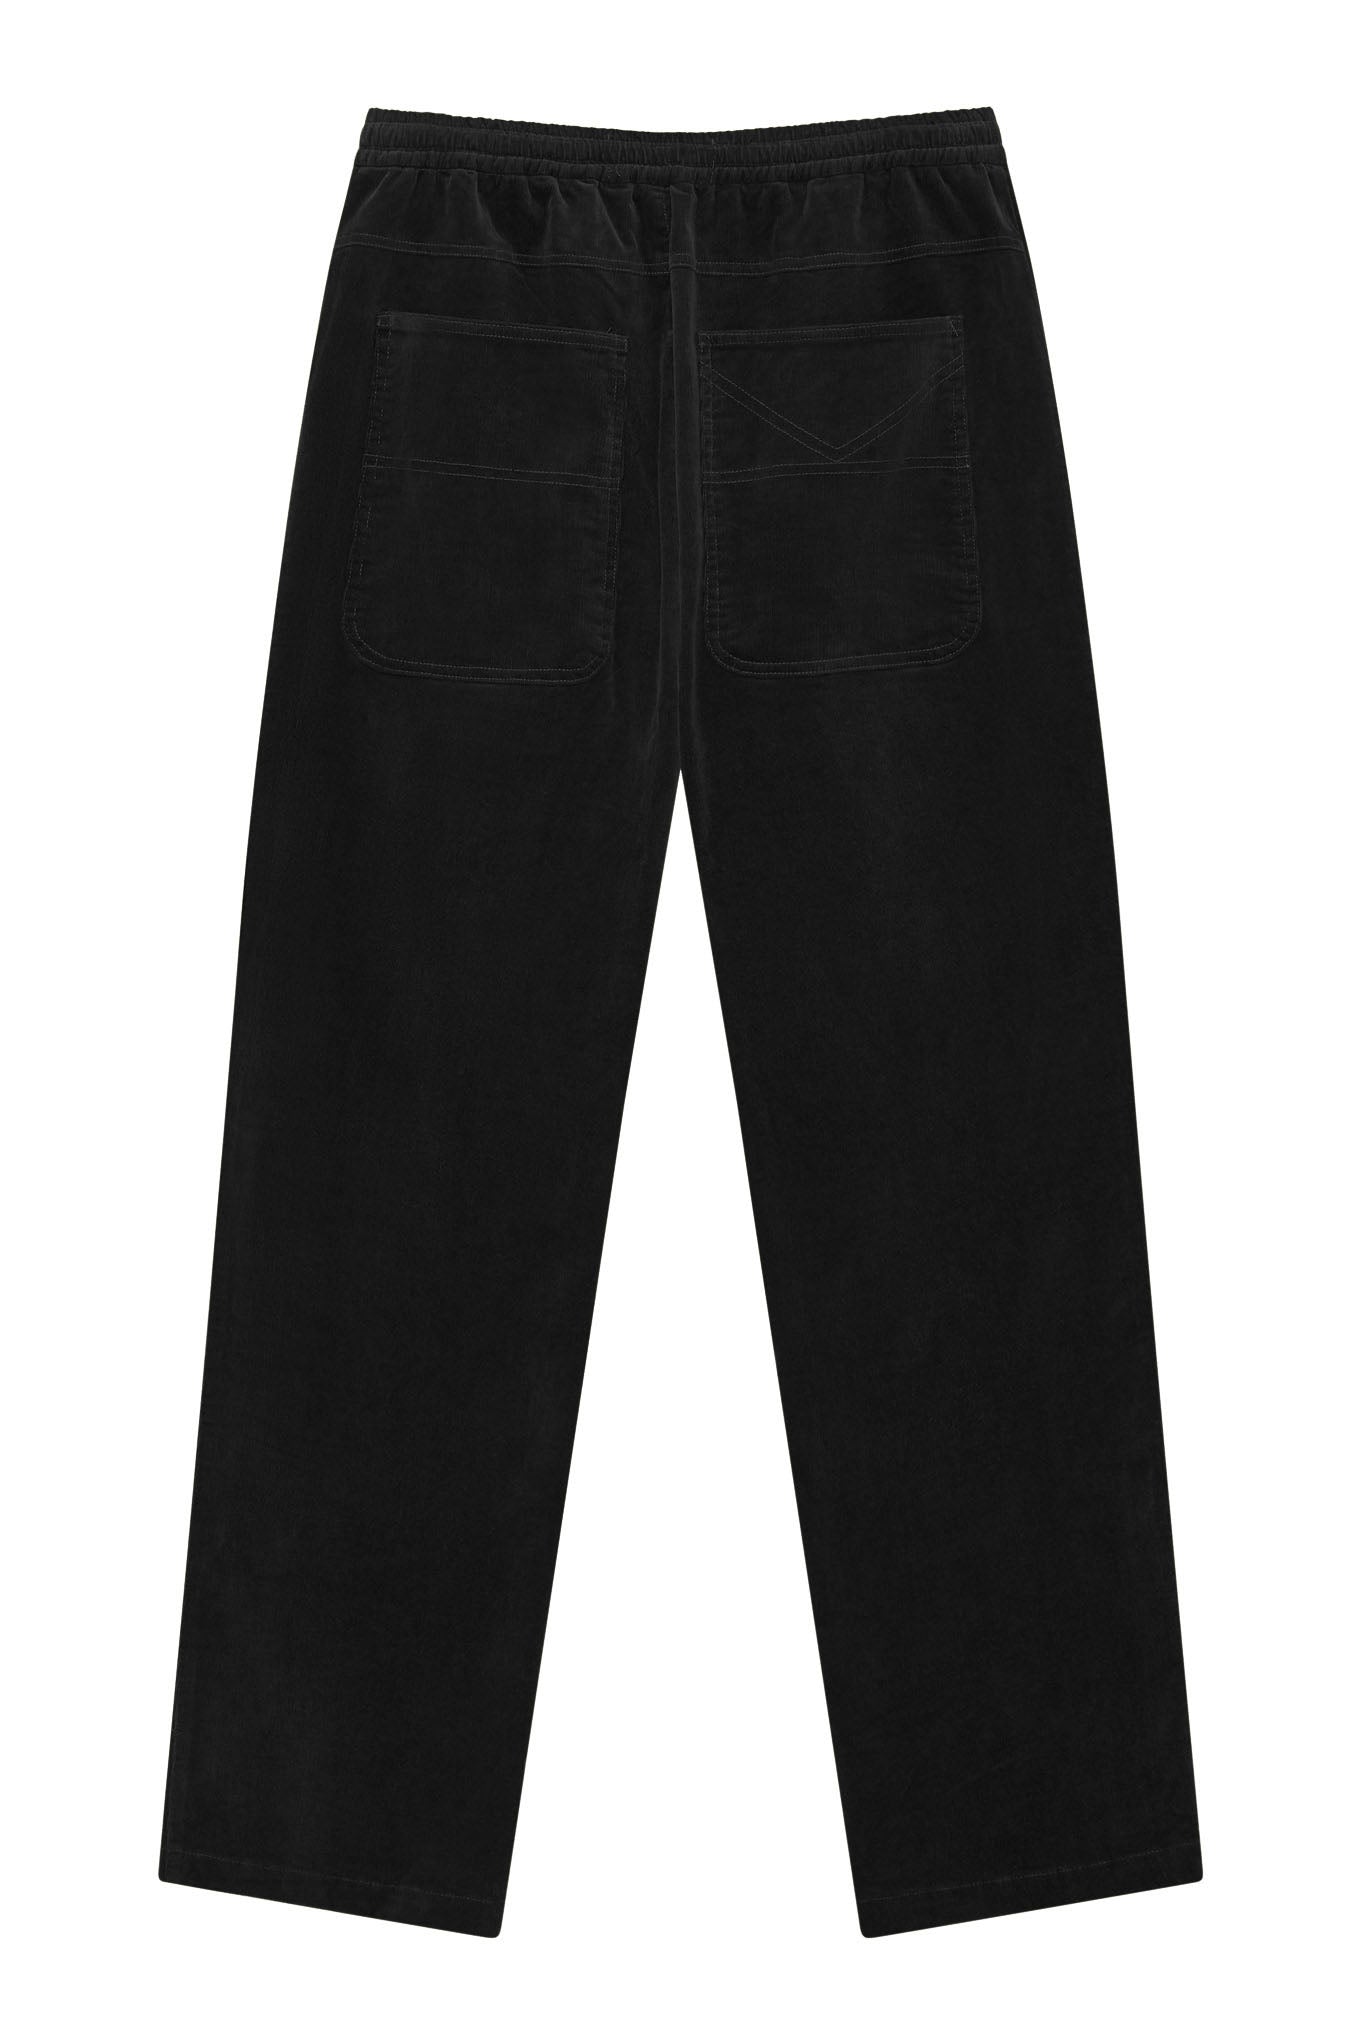 Pantalon noir en velours côtelé ANDRO en coton biologique par Komodo